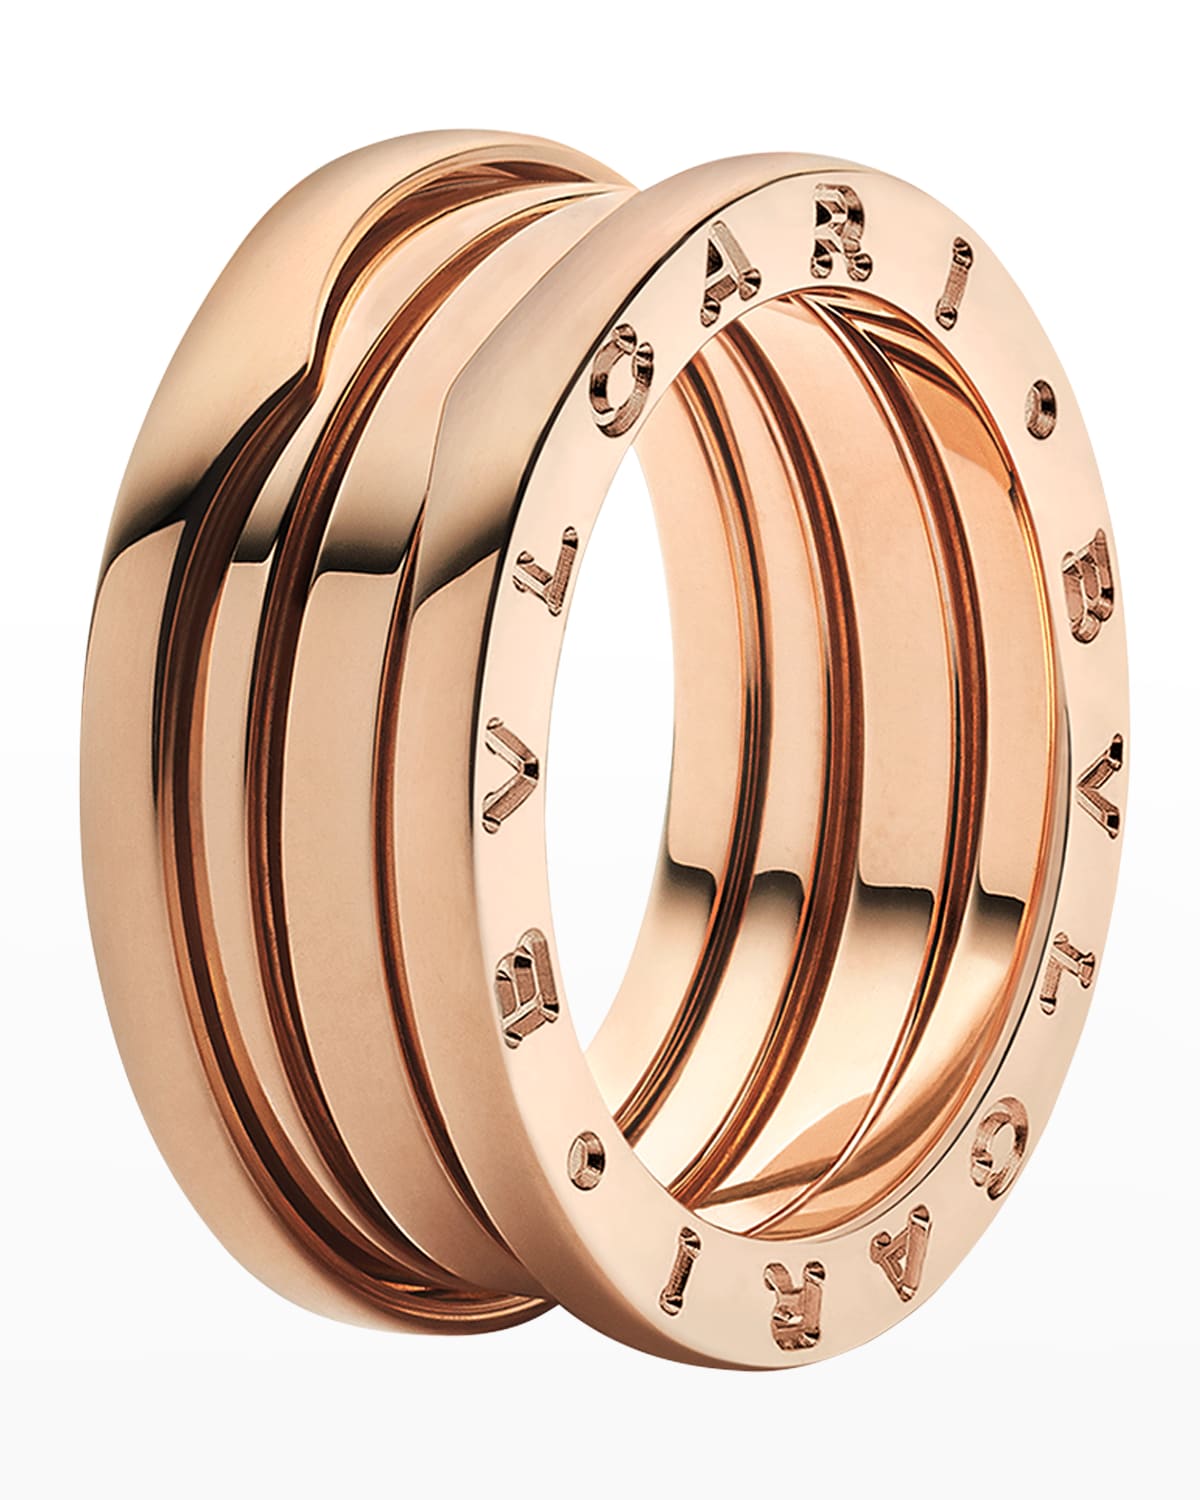 Unisex B.zero1 18K Rose Gold Ring, Size 56